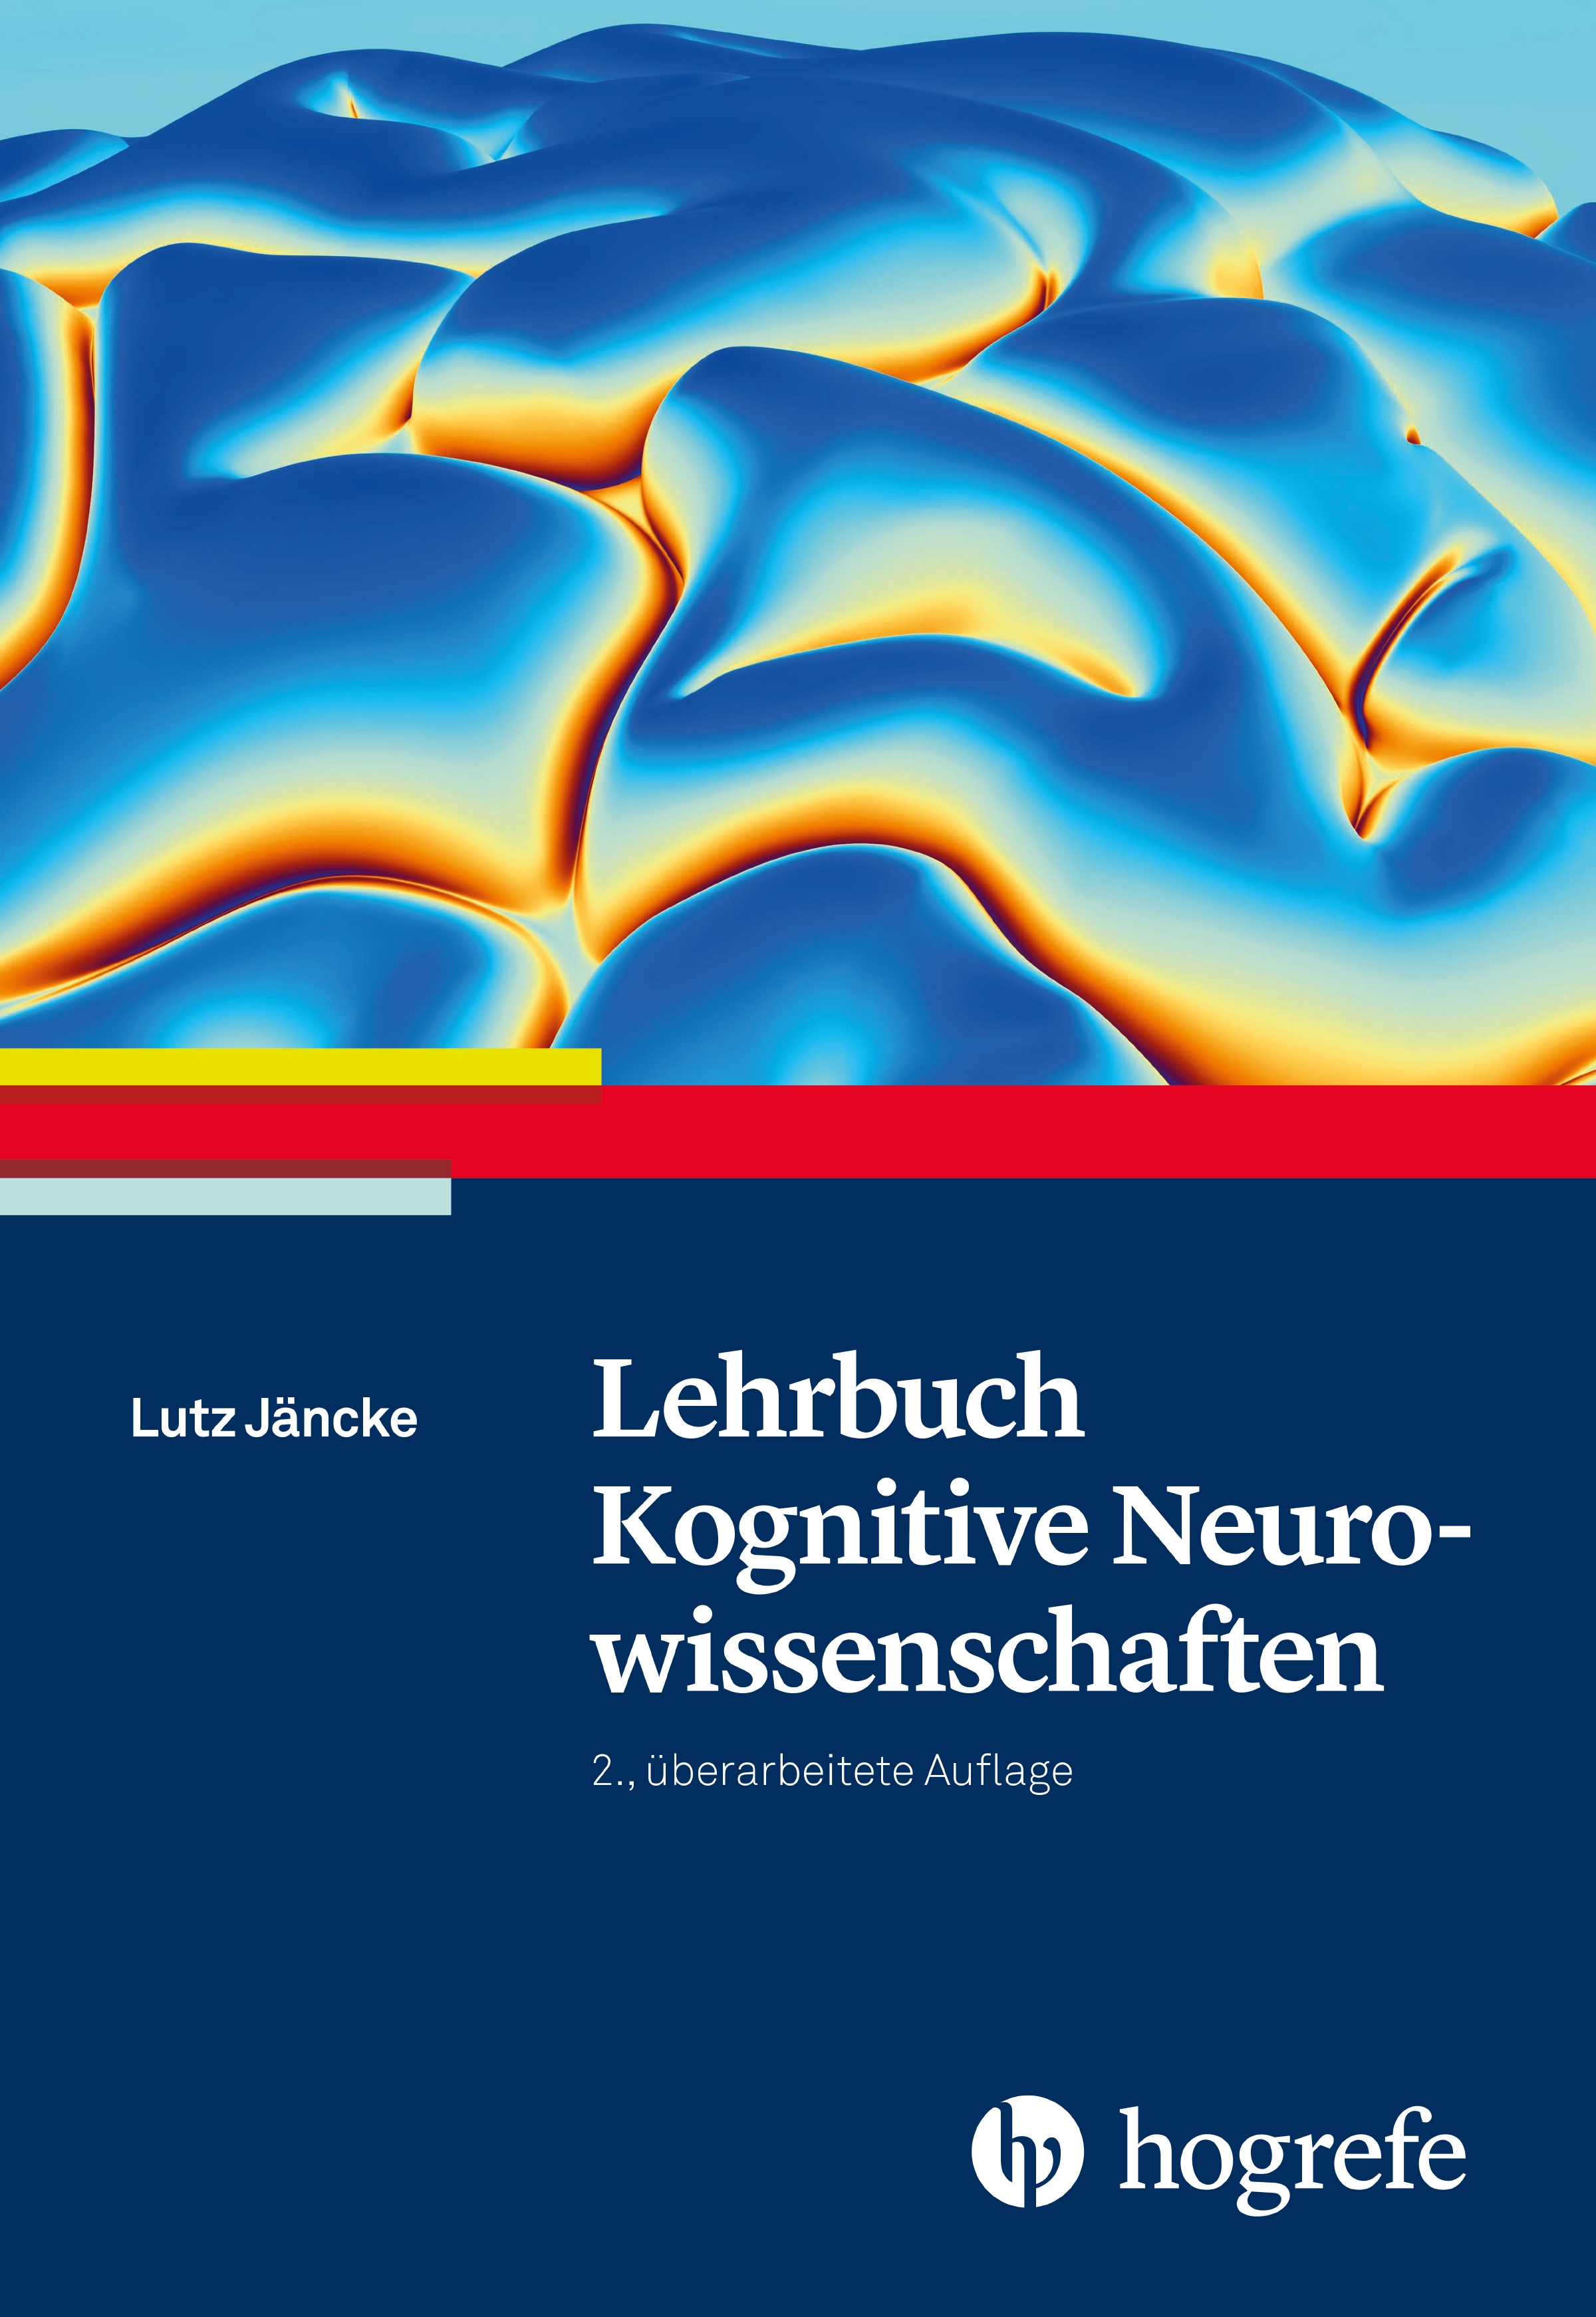 Lehrbuch Kognitive Neurowissenschaften Lutz Jäncke - Bild 1 von 1